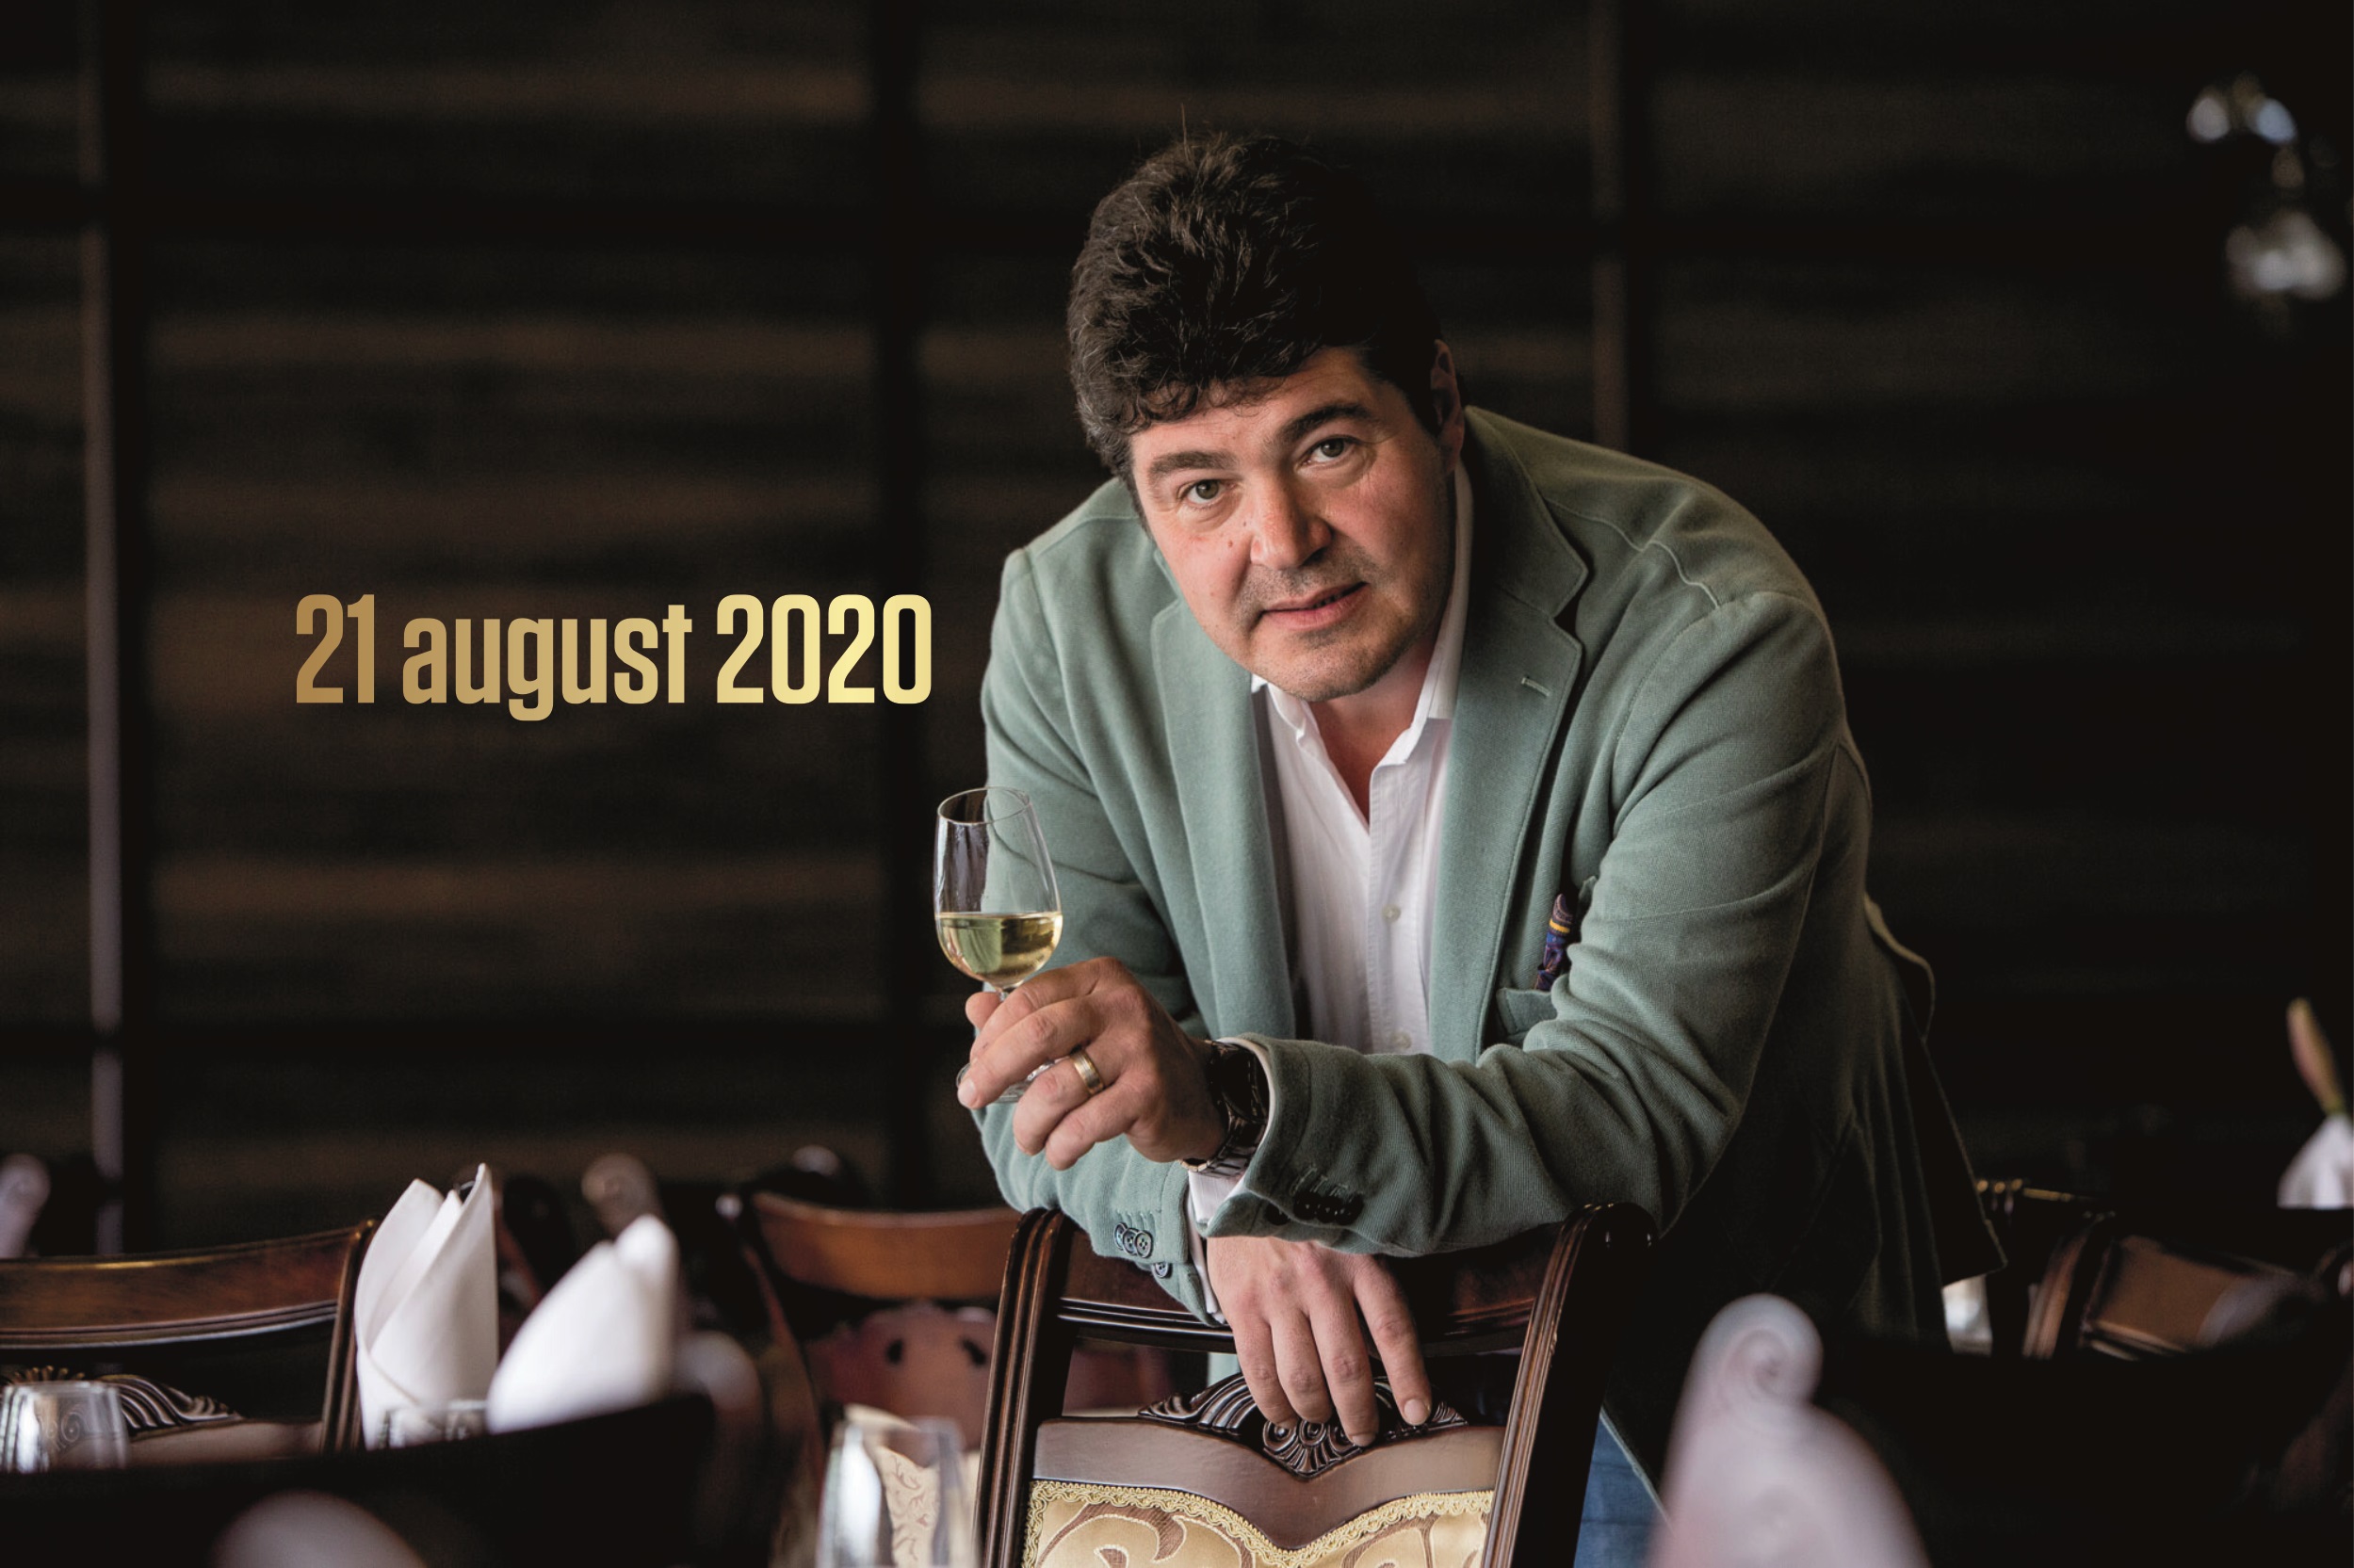 21 - 23 august 2020 – Ce vinuri bem în acest weekend, 3 vinuri pentru 3 seri. Recomandările lui Cătălin Păduraru, Preşedintele VINARIUM International Wine Contest